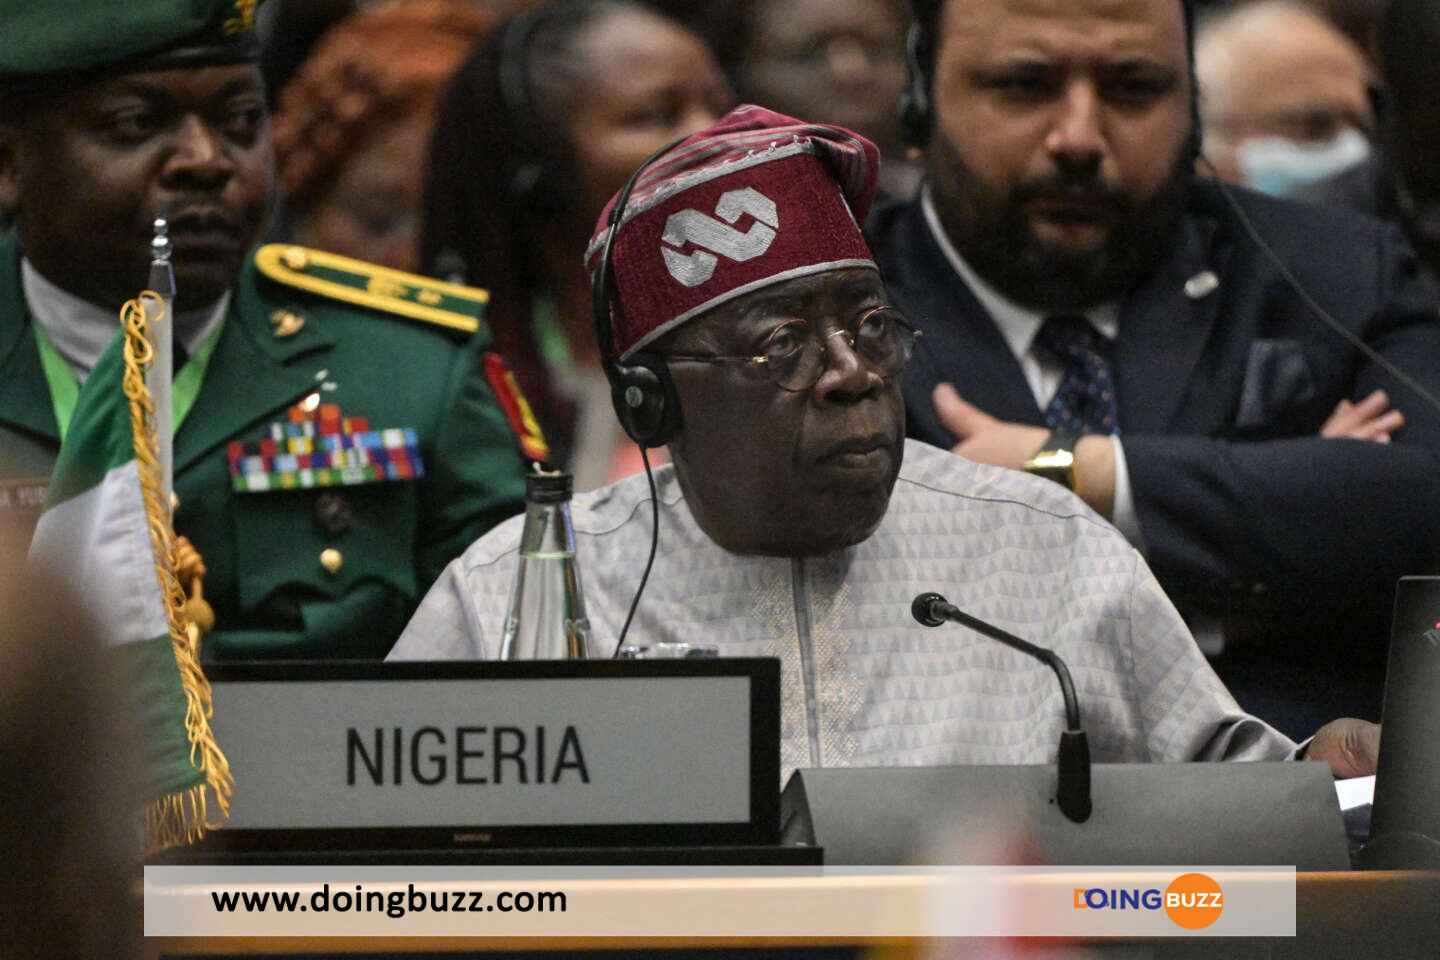 Nigeria Menace D'Expulsion Les Ambassades Étrangères , Les Détails